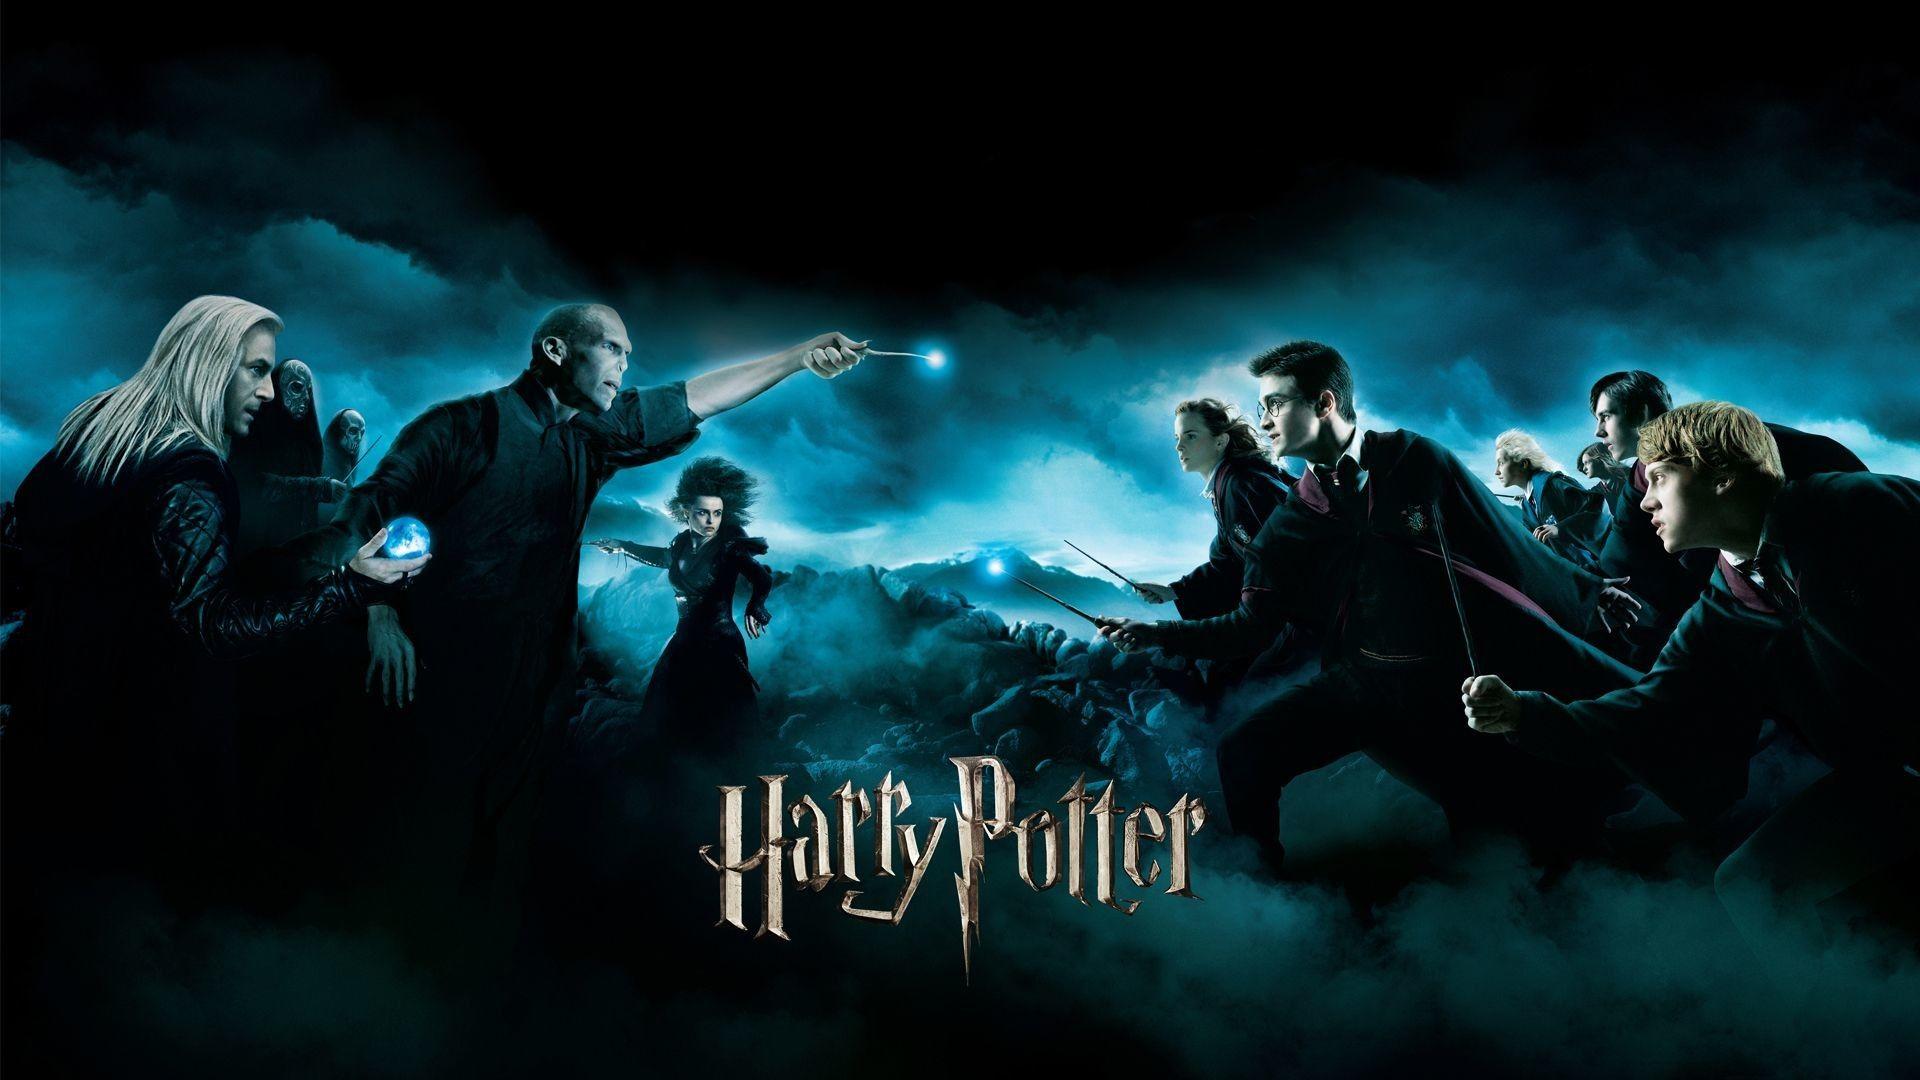 Hãy cảm nhận sự kỳ diệu của thế giới phù thủy với những hình nền Harry Potter chất lượng cao! Với độ phân giải sắc nét, bạn sẽ được trải nghiệm Hogwarts với độ chi tiết tới từng cây cối, từng ngóc ngách của ngôi trường nổi tiếng này. Cùng đón nhận những chàng tiên tri và phù thủy qua những bức ảnh đẹp nhất!